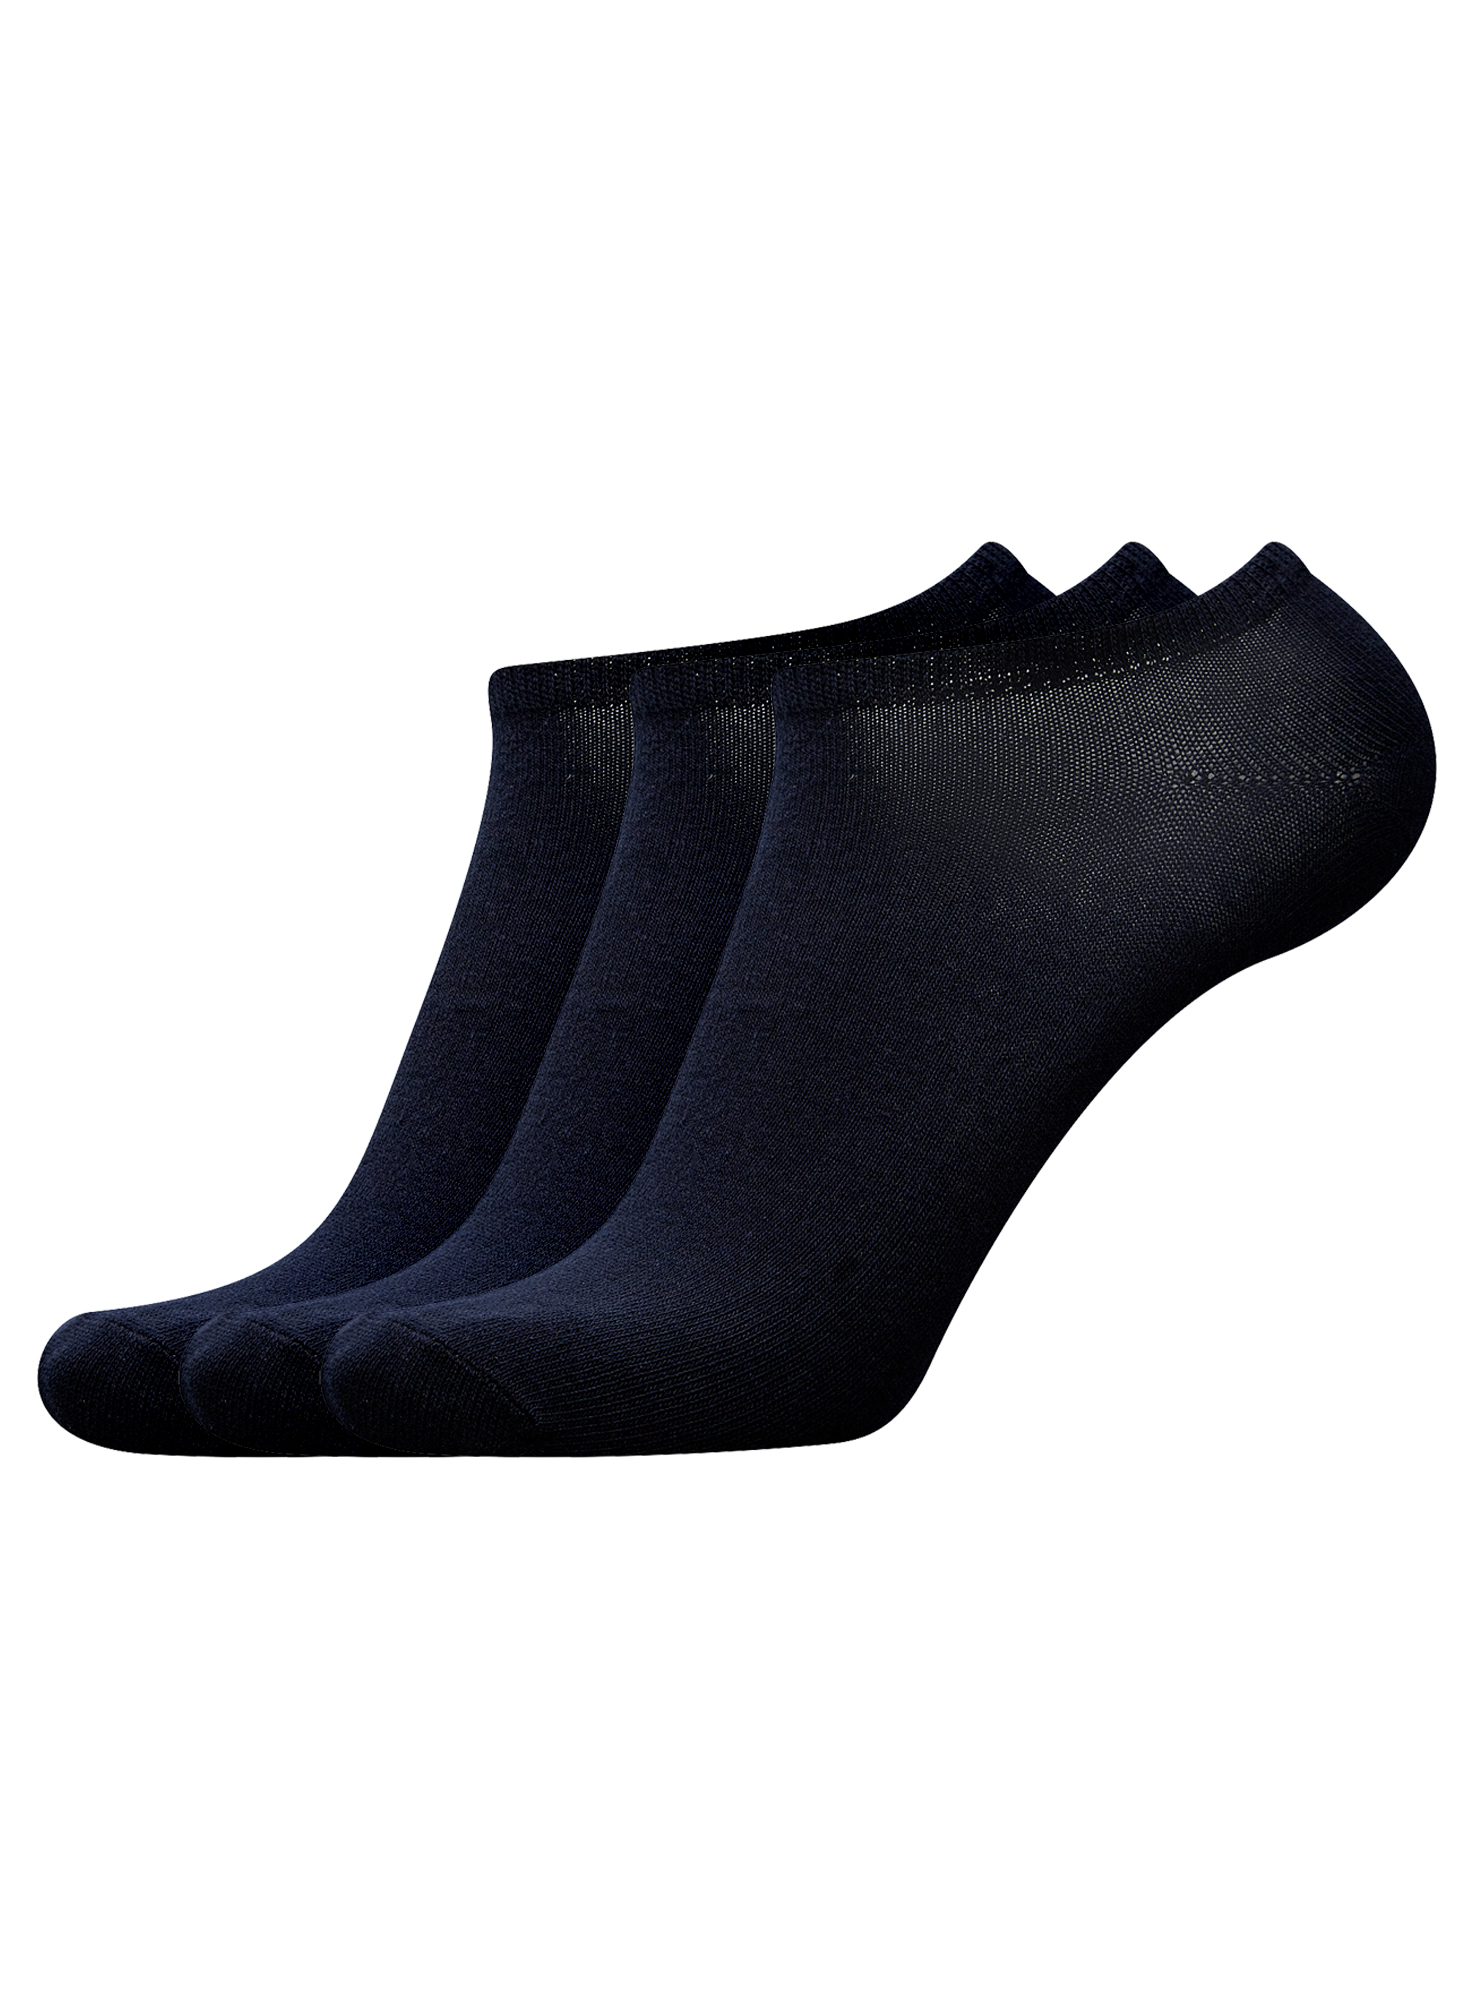 Комплект носков мужских oodji 7B231000T3 синих 40-43